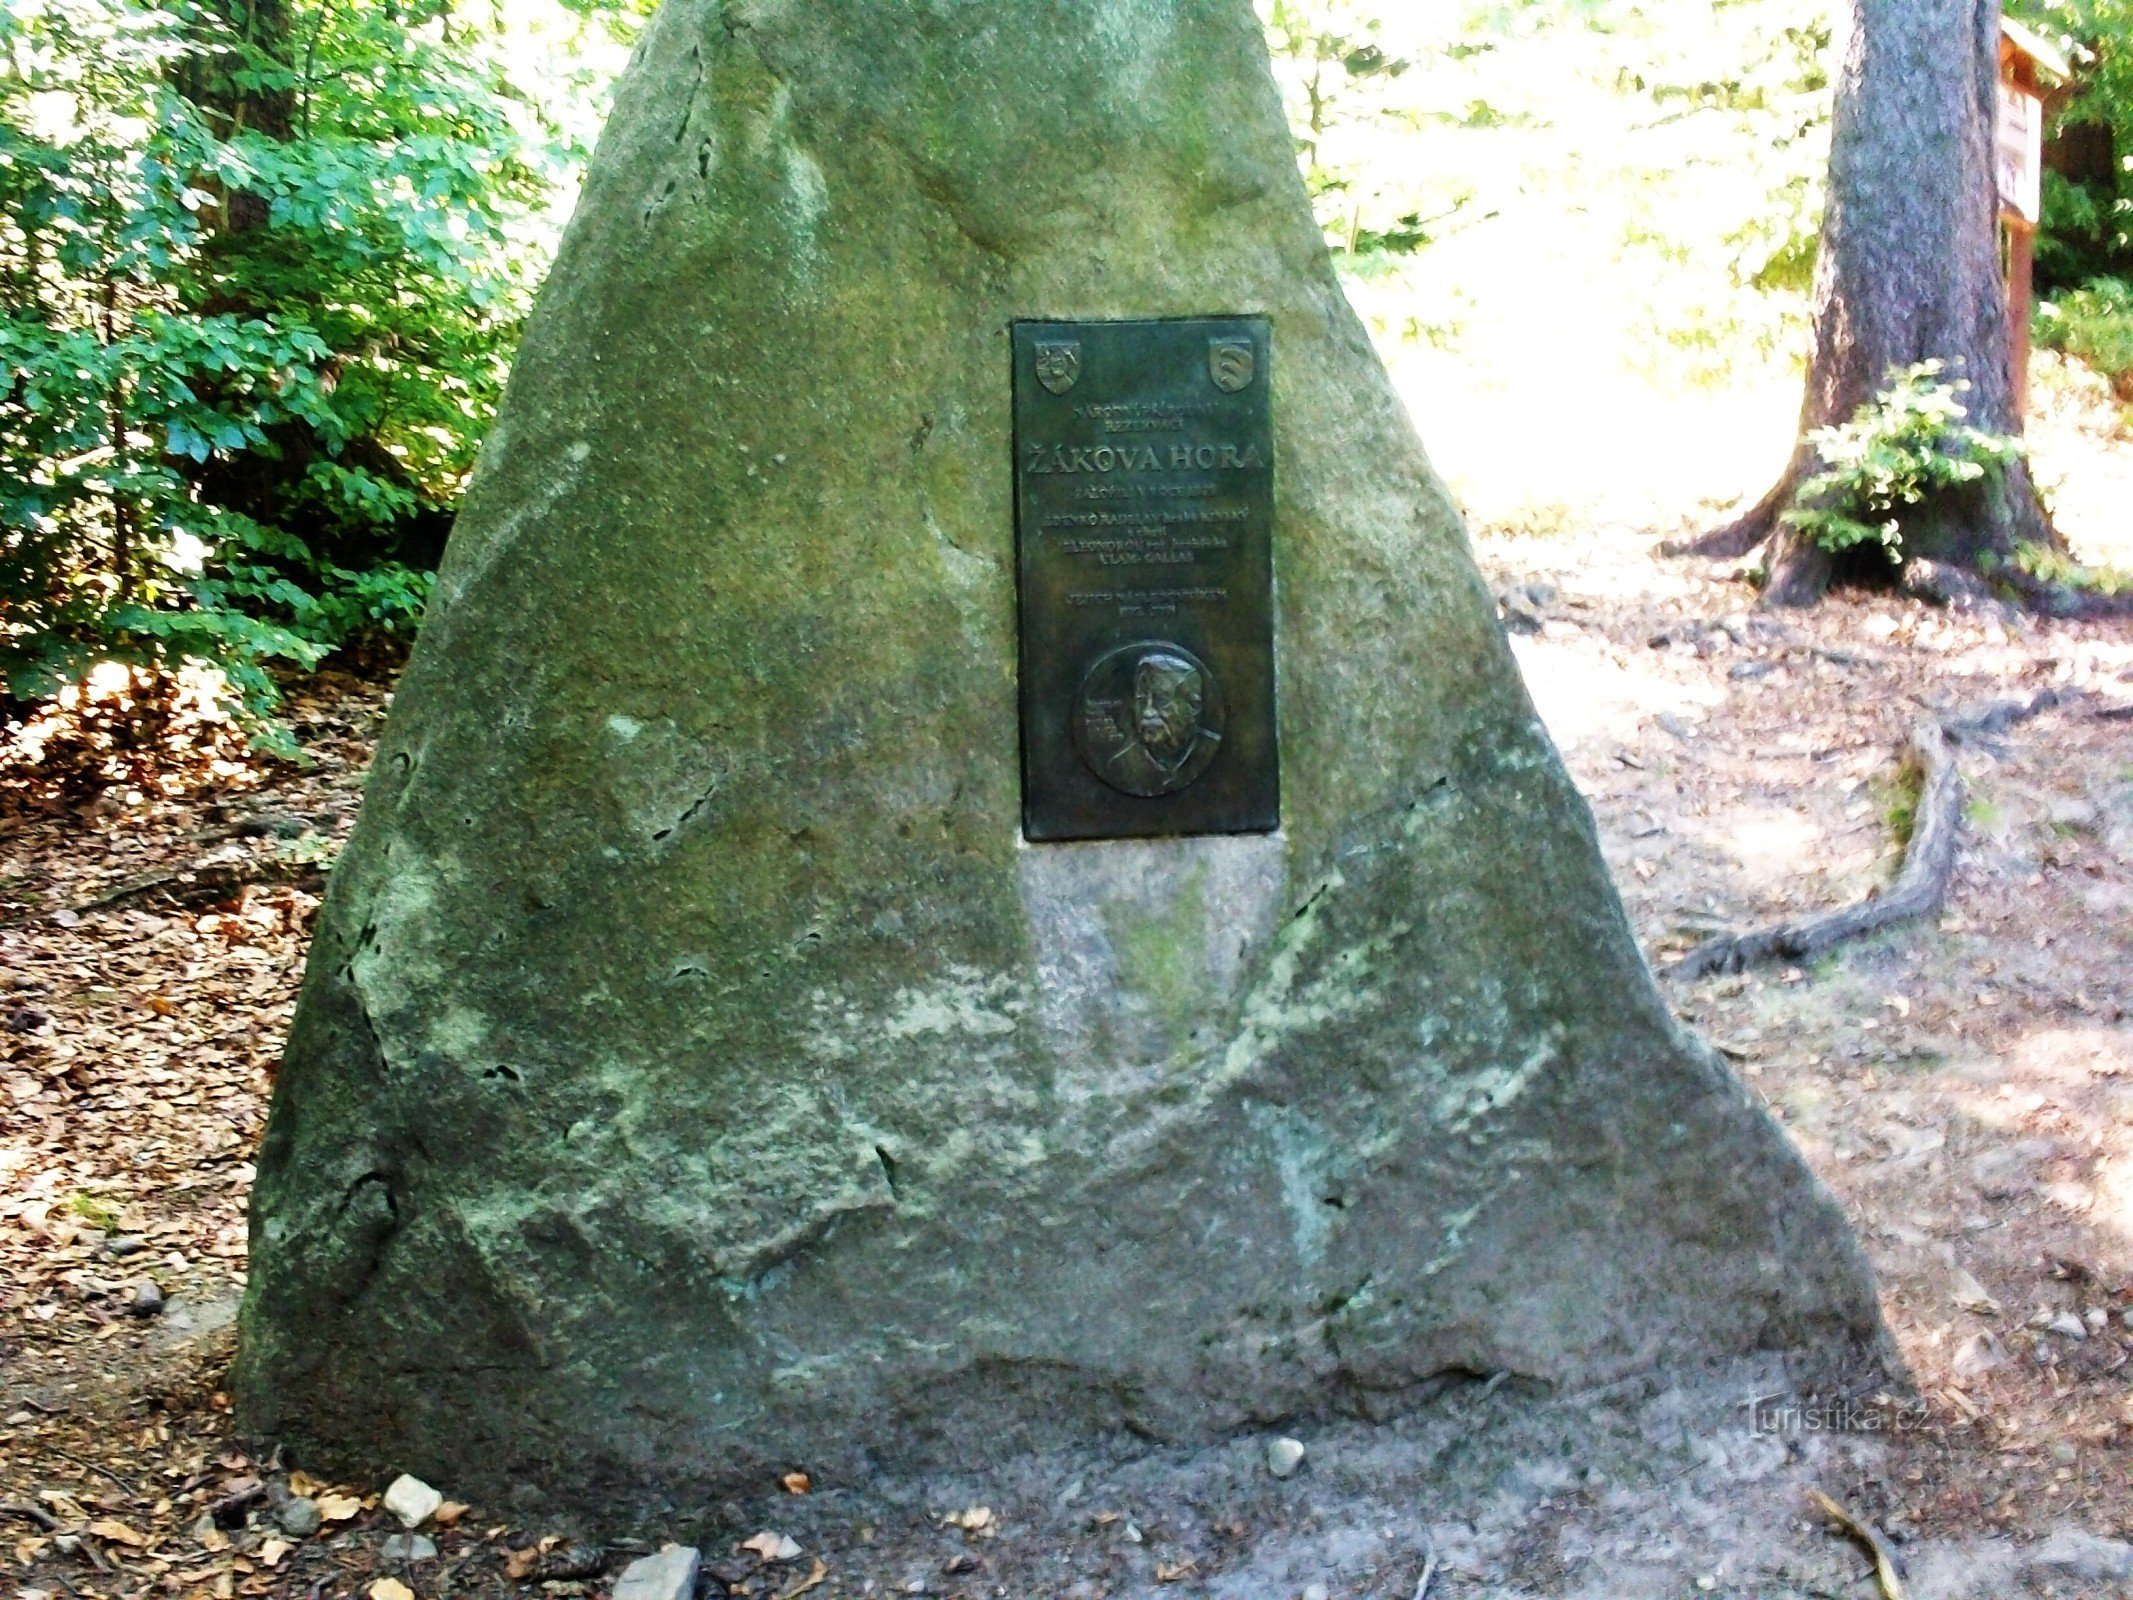 NPR Žákova Hora の創設者の記念碑